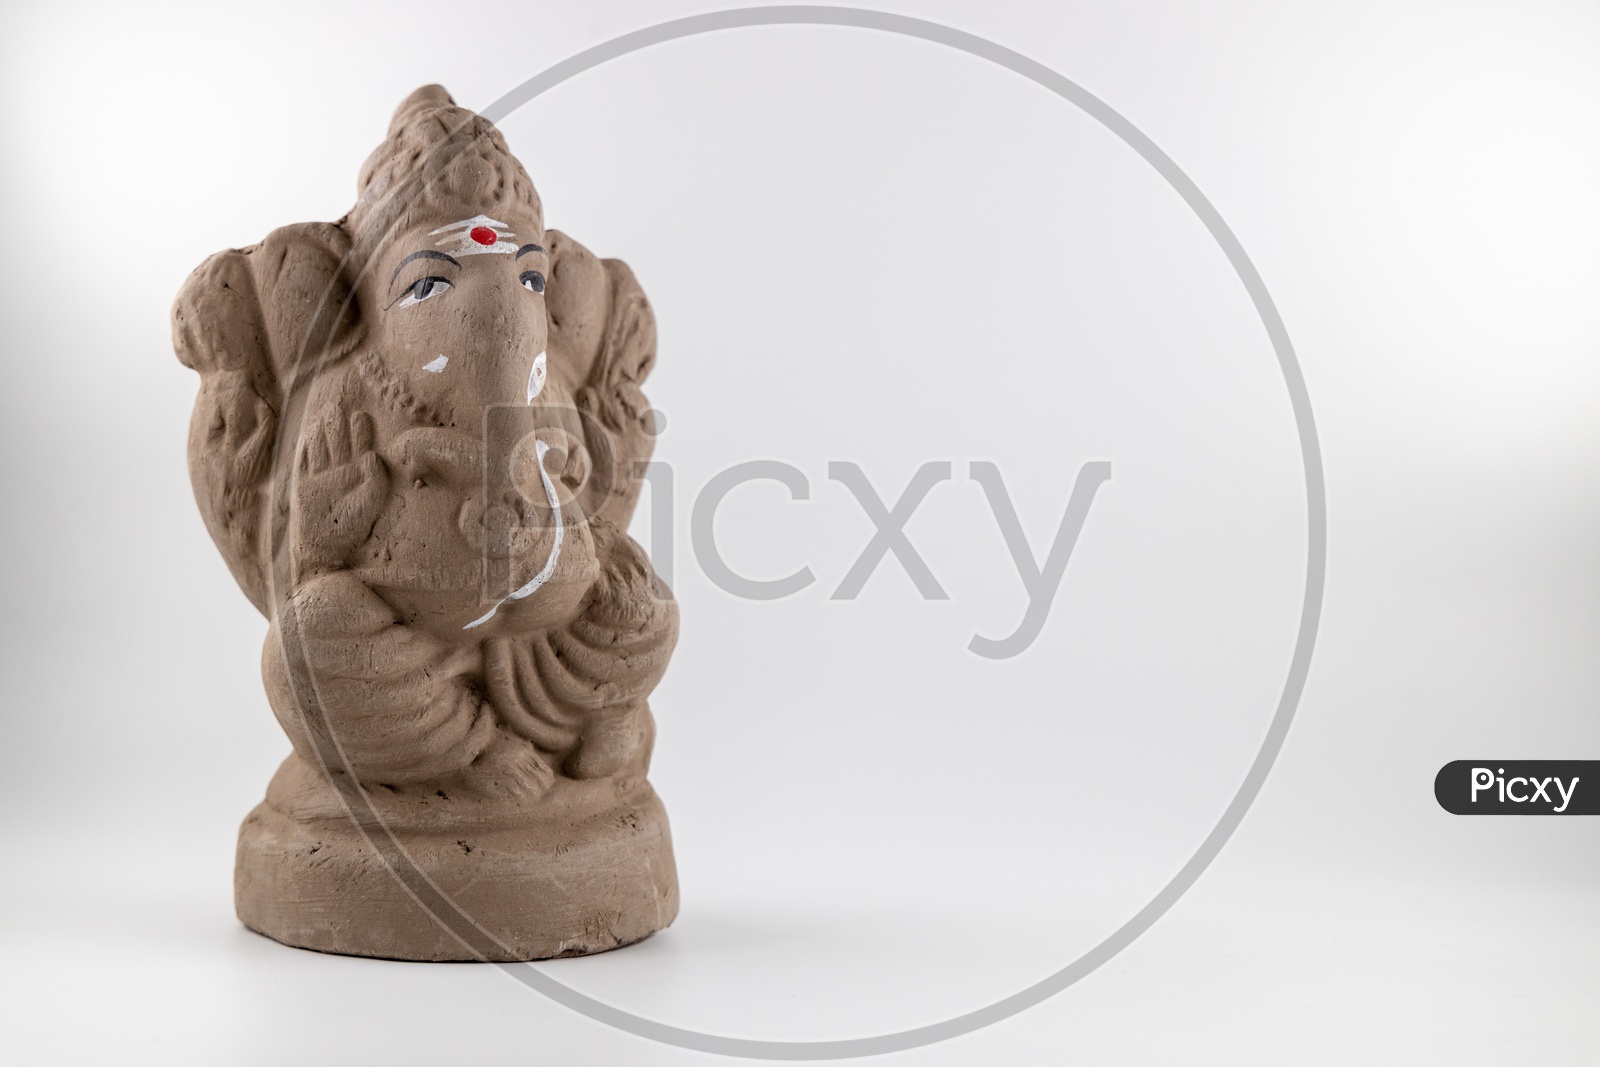 Eco Friendly ganesh idol made of clay.